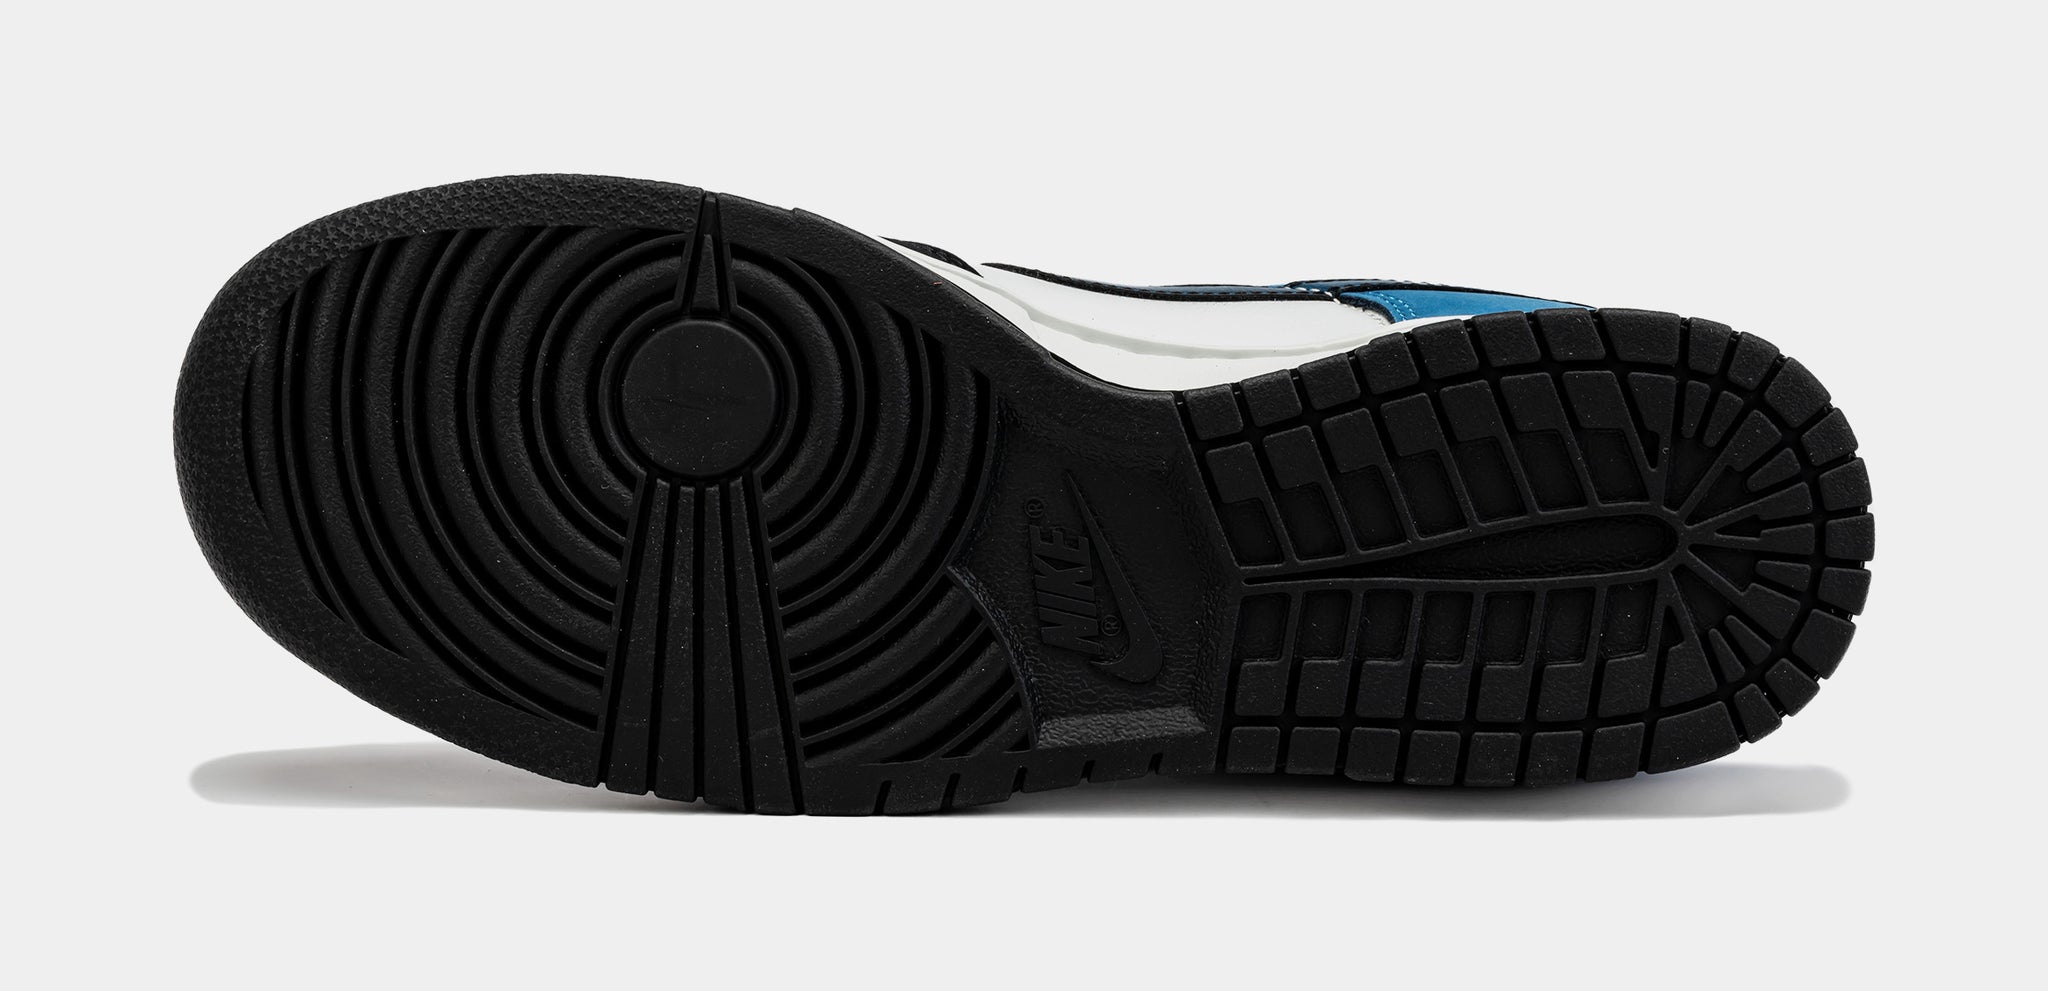 Nike Men's Dunk Low Pro SB Black/Black/University Blue Skate Shoe 